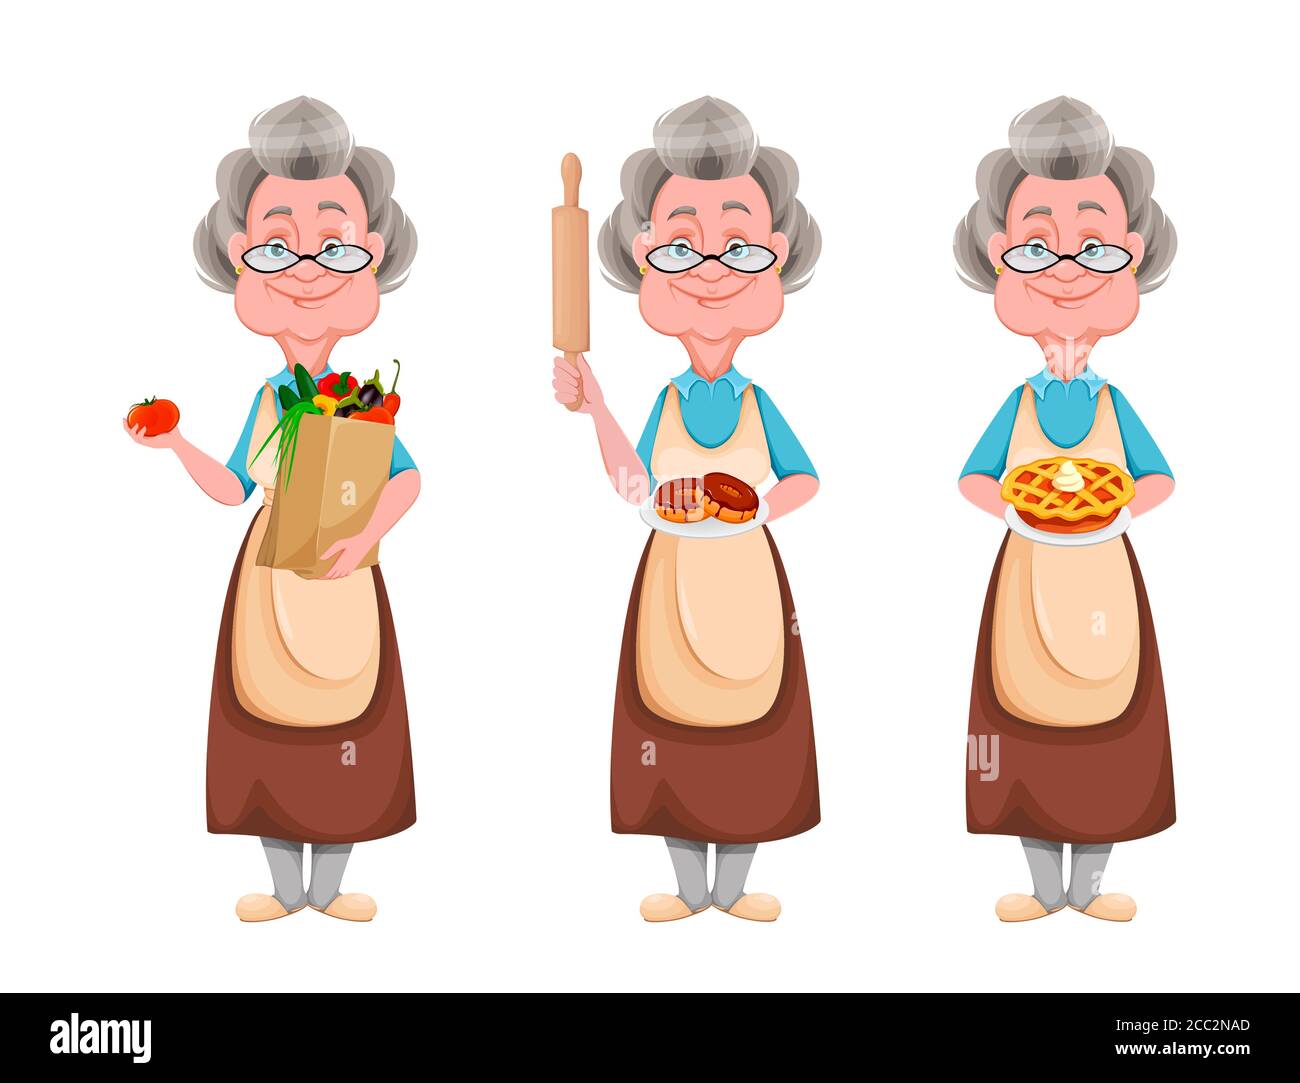 Cartoon old lady immagini e fotografie stock ad alta risoluzione - Alamy